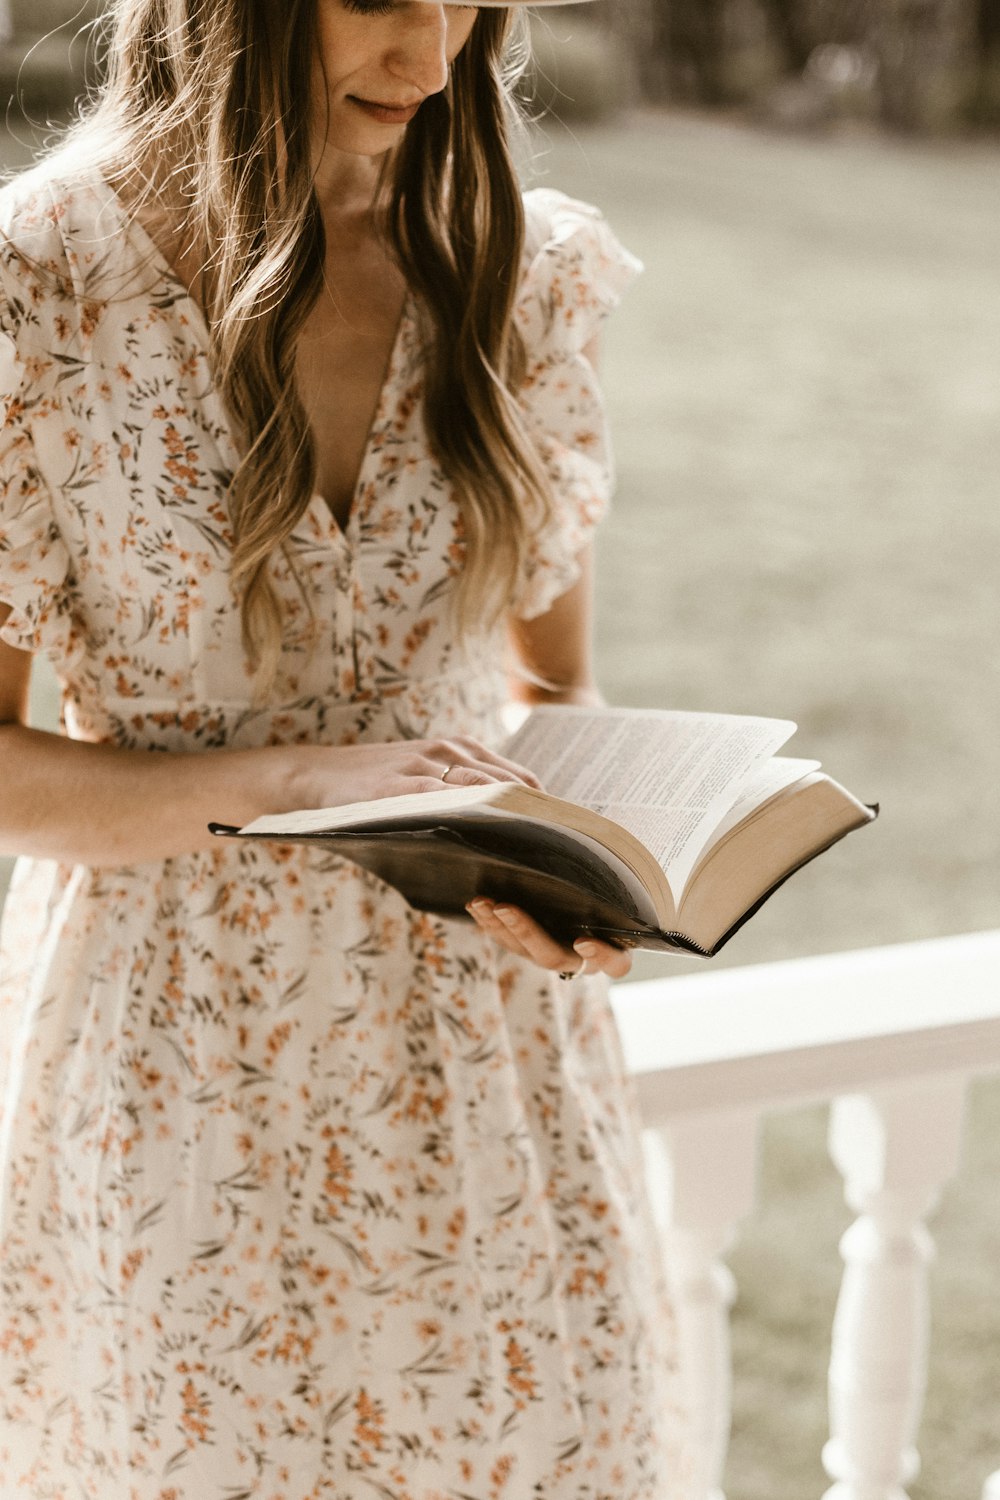 Femme en blanc et marron robe fleurie livre de lecture